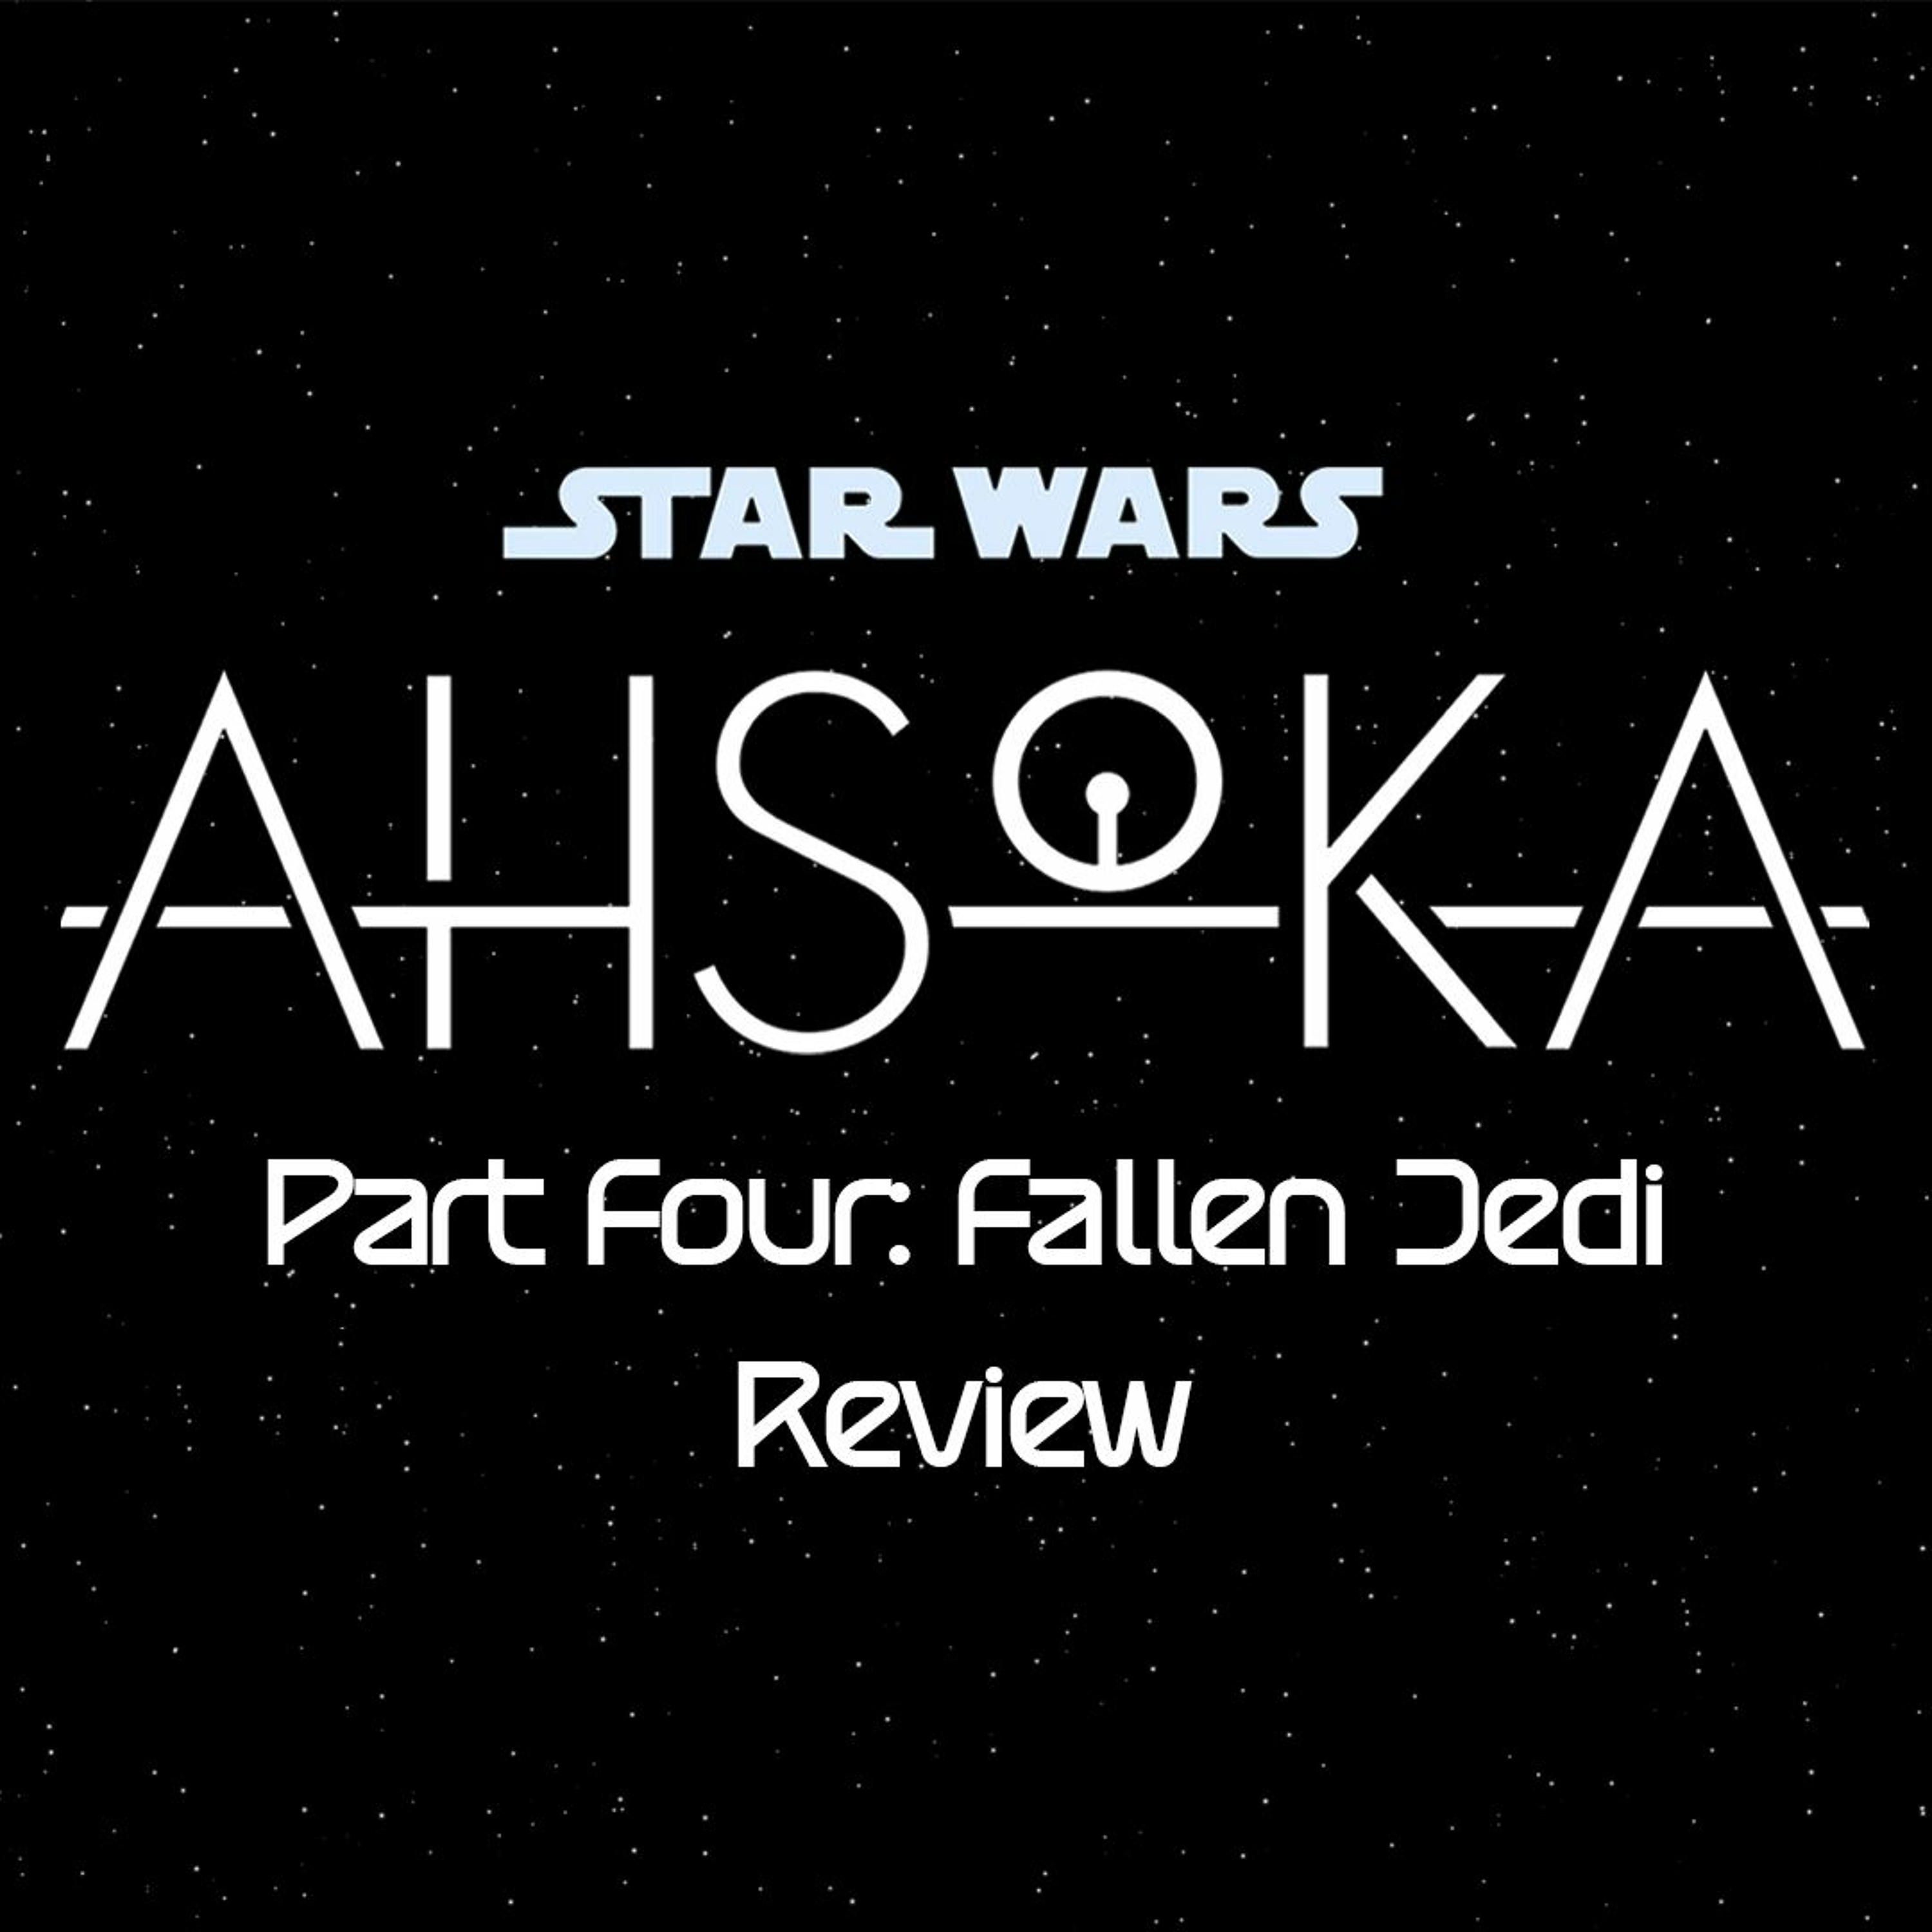 Ahsoka Part Four: Fallen Jedi